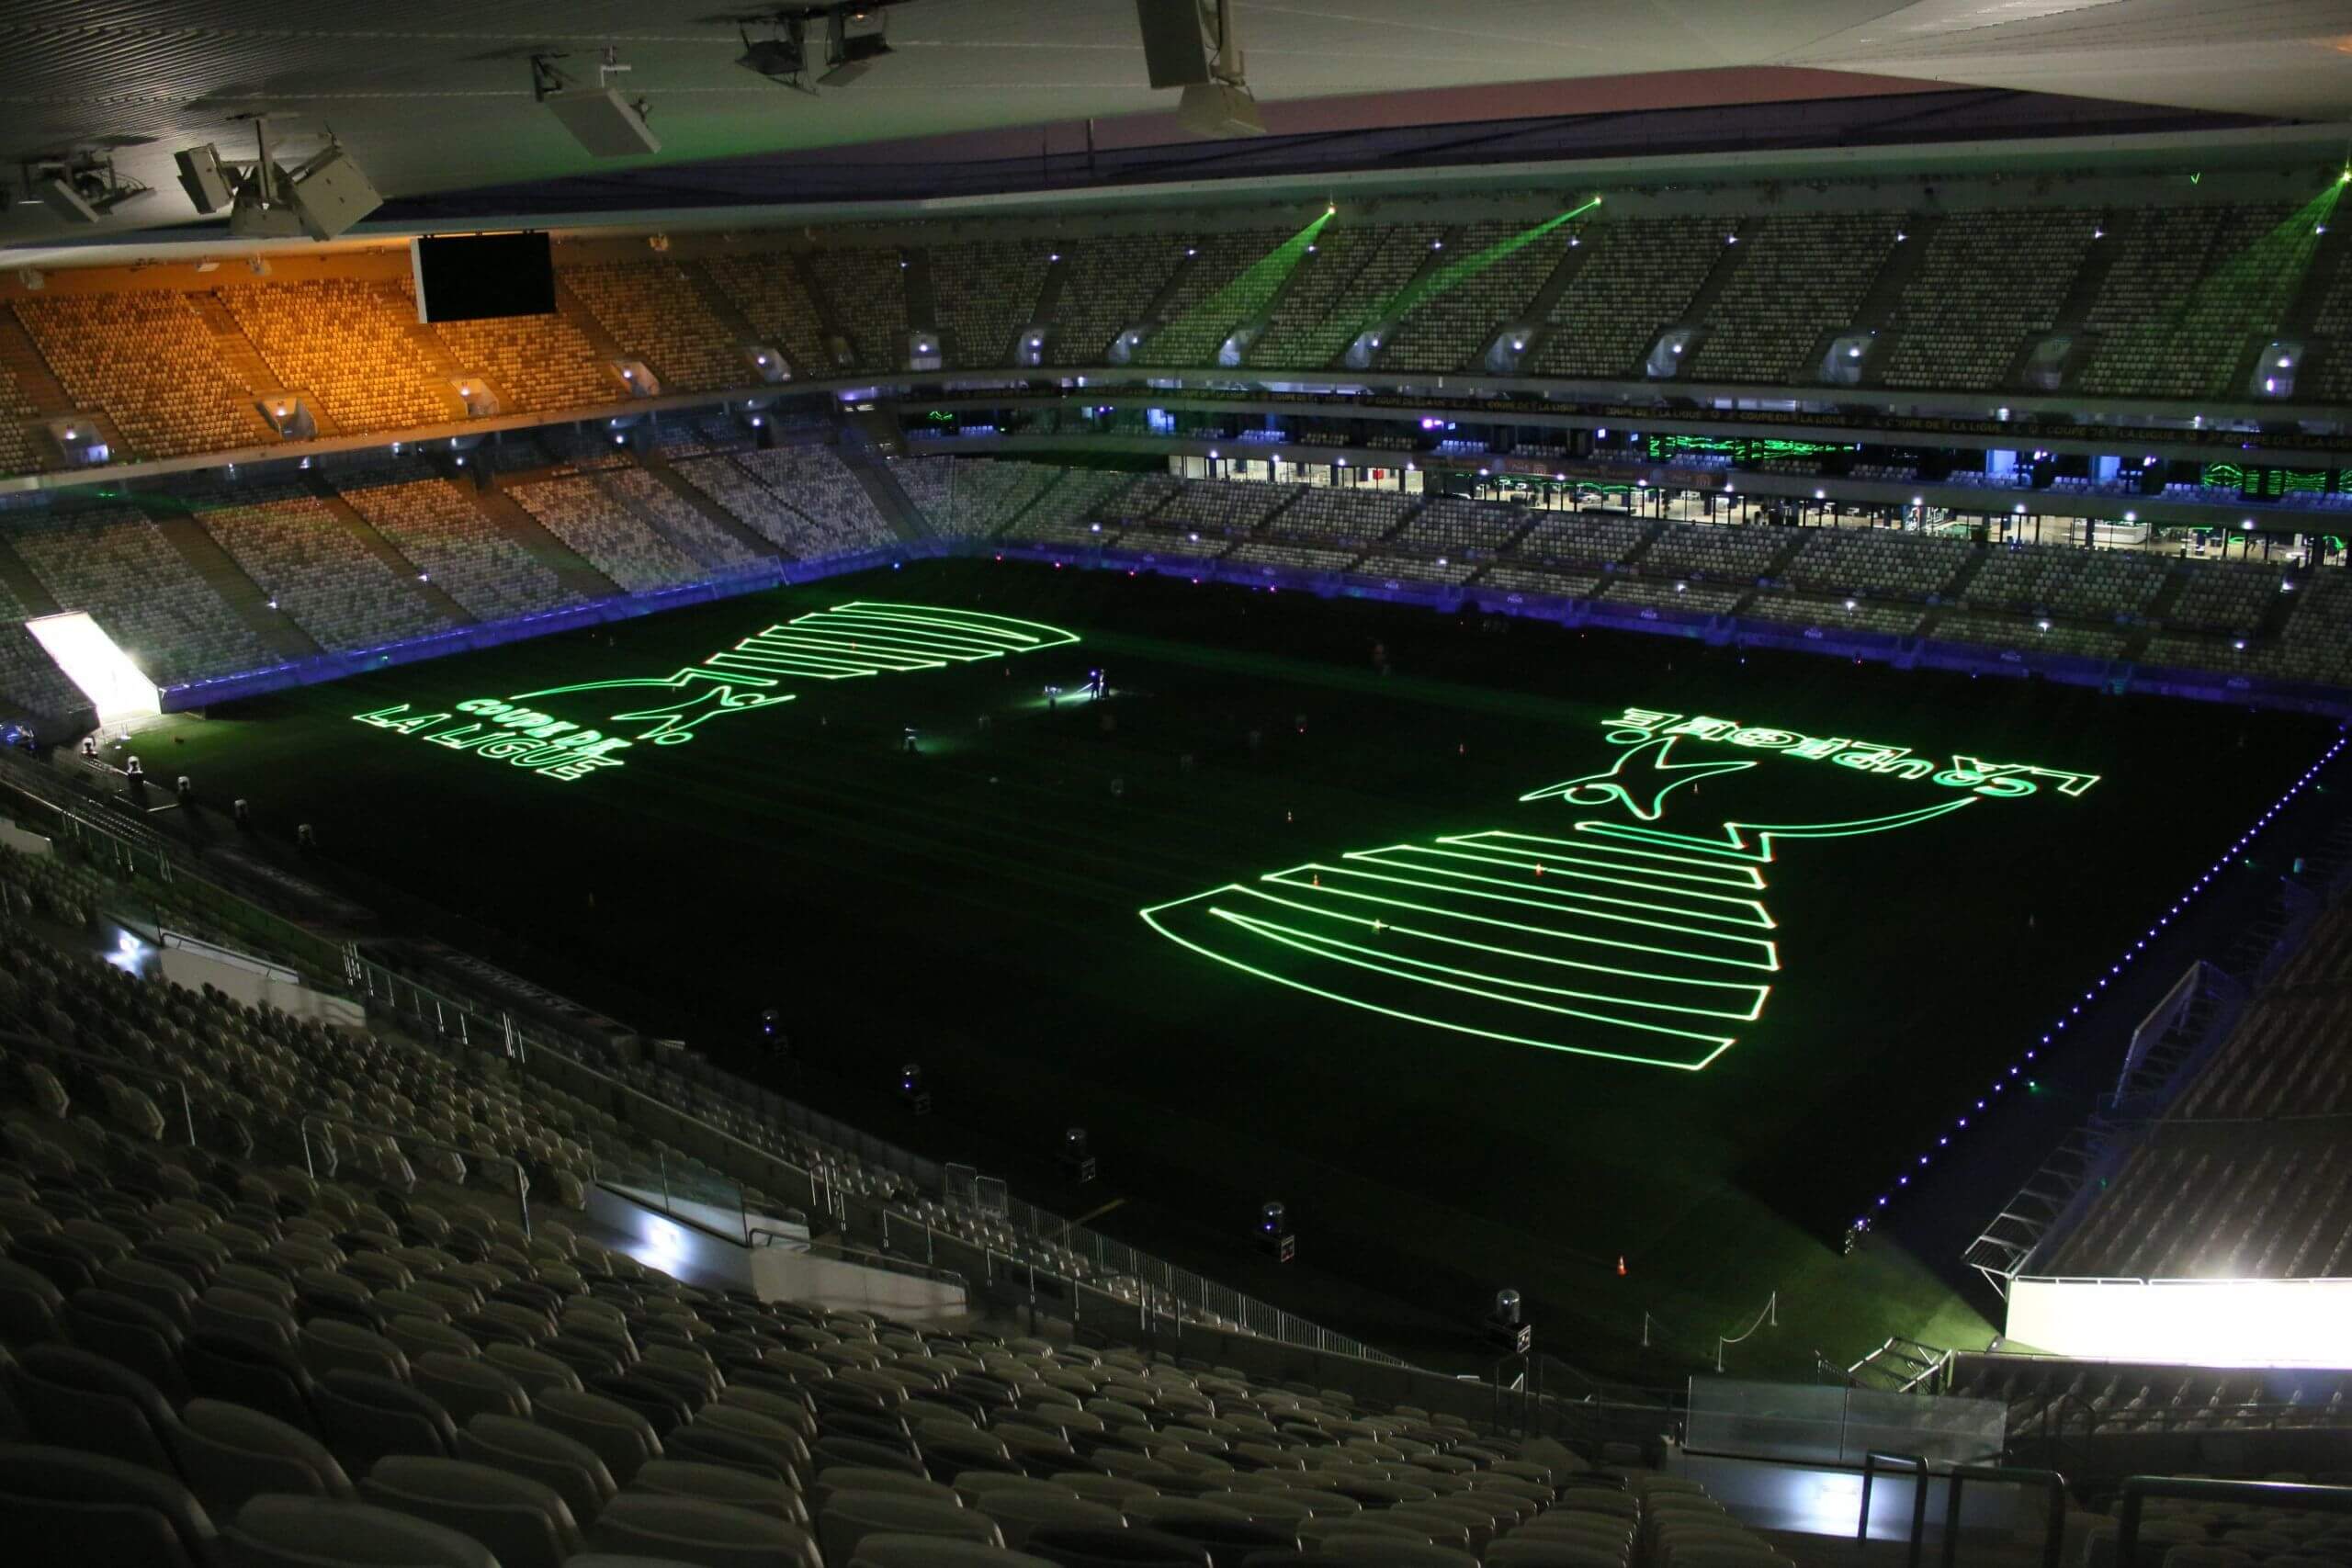 Europe Évènement - Photo d'un stade avec un logo vert de la coupe de la ligue de projeté